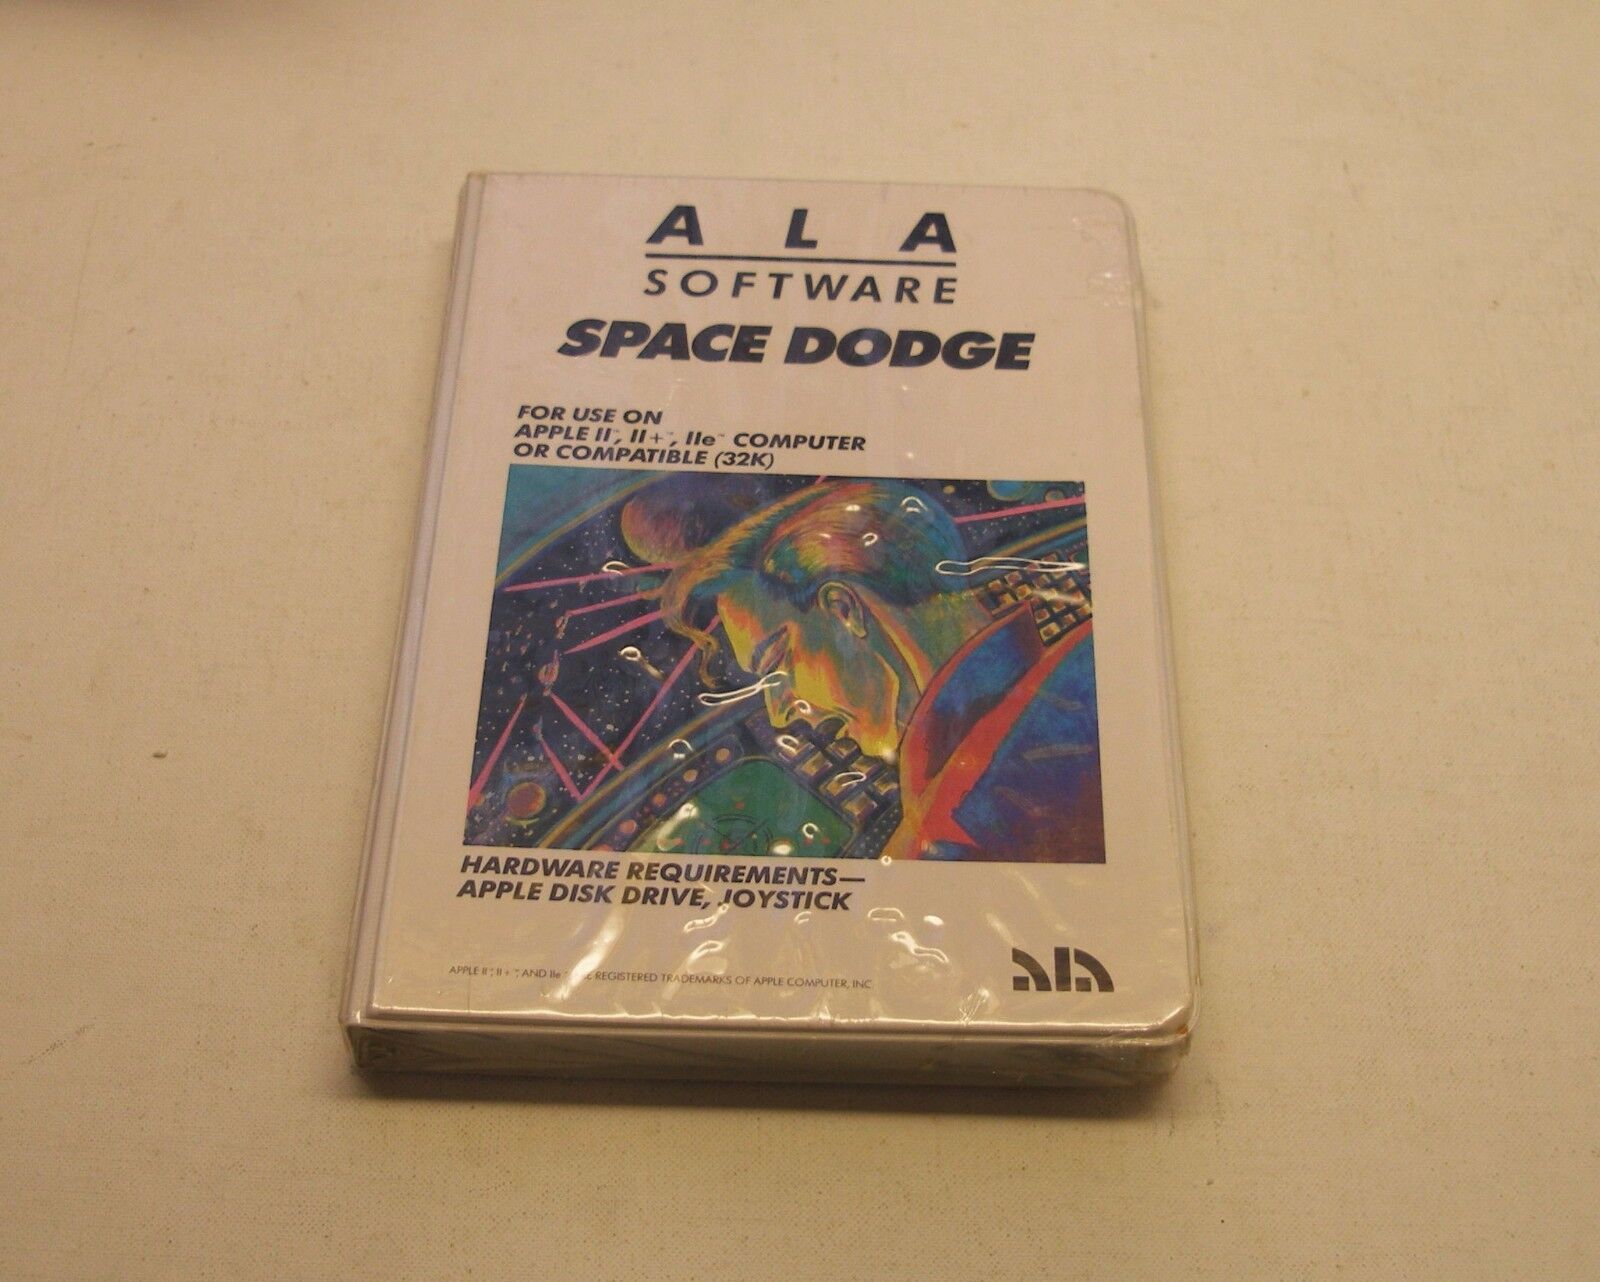 VERY RARE Space Dodge by ALA Software for Apple II+, IIe, IIc, IIGS - NEW